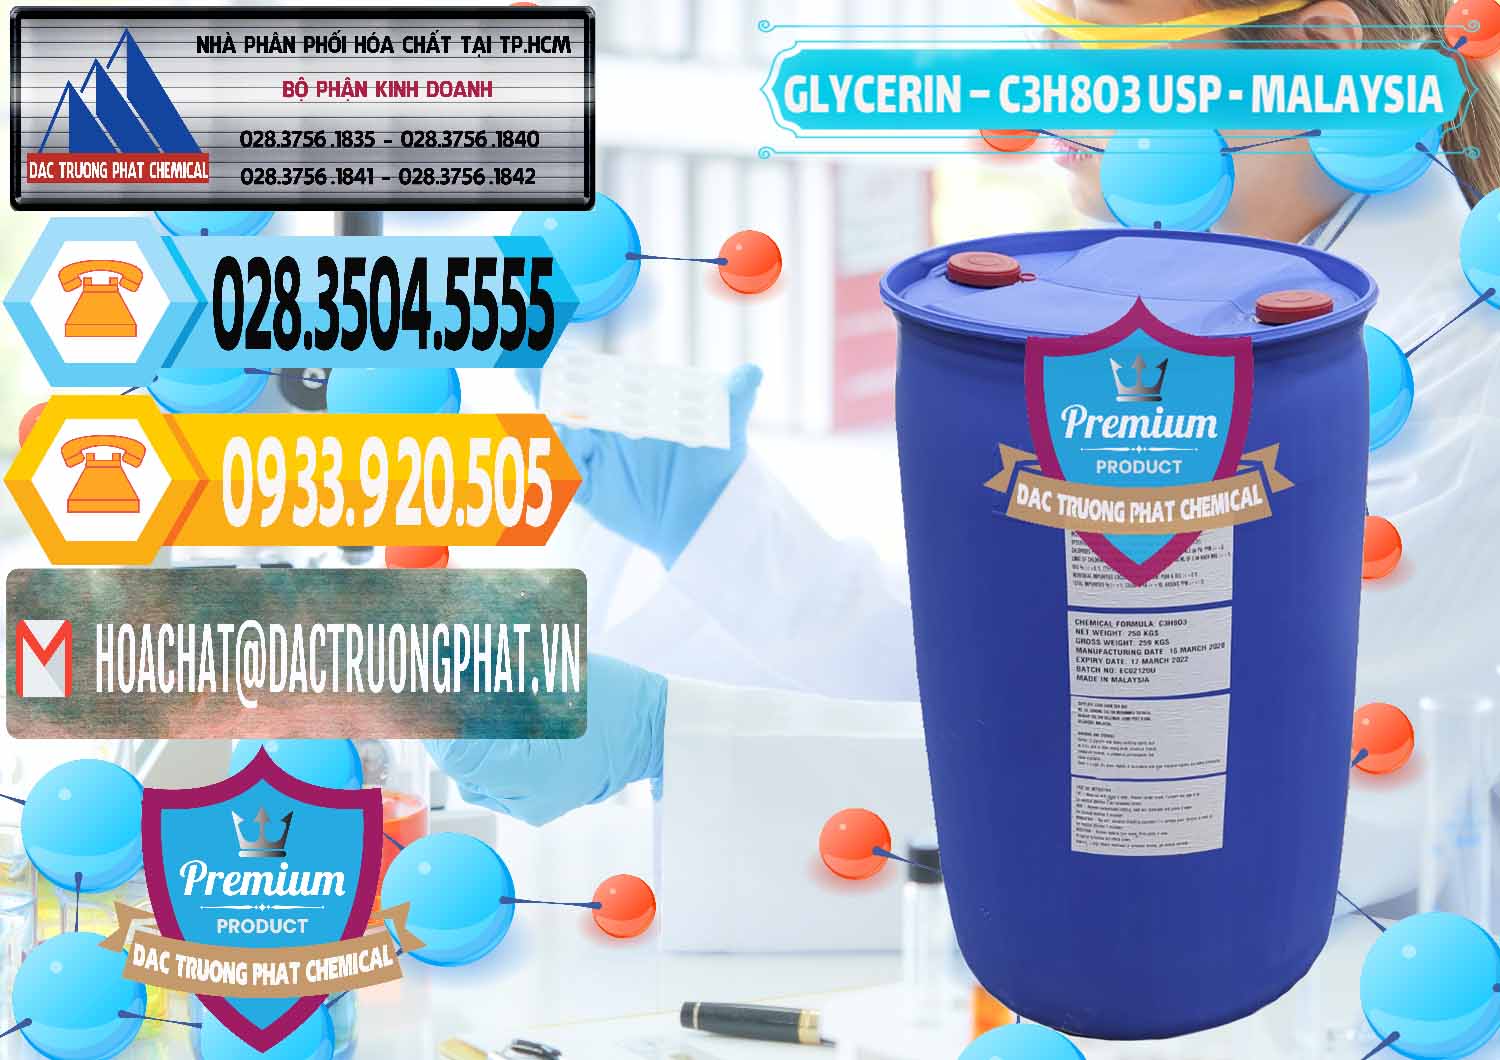 Công ty chuyên phân phối _ bán Glycerin – C3H8O3 USP Malaysia - 0233 - Cty chuyên phân phối & nhập khẩu hóa chất tại TP.HCM - hoachattayrua.net